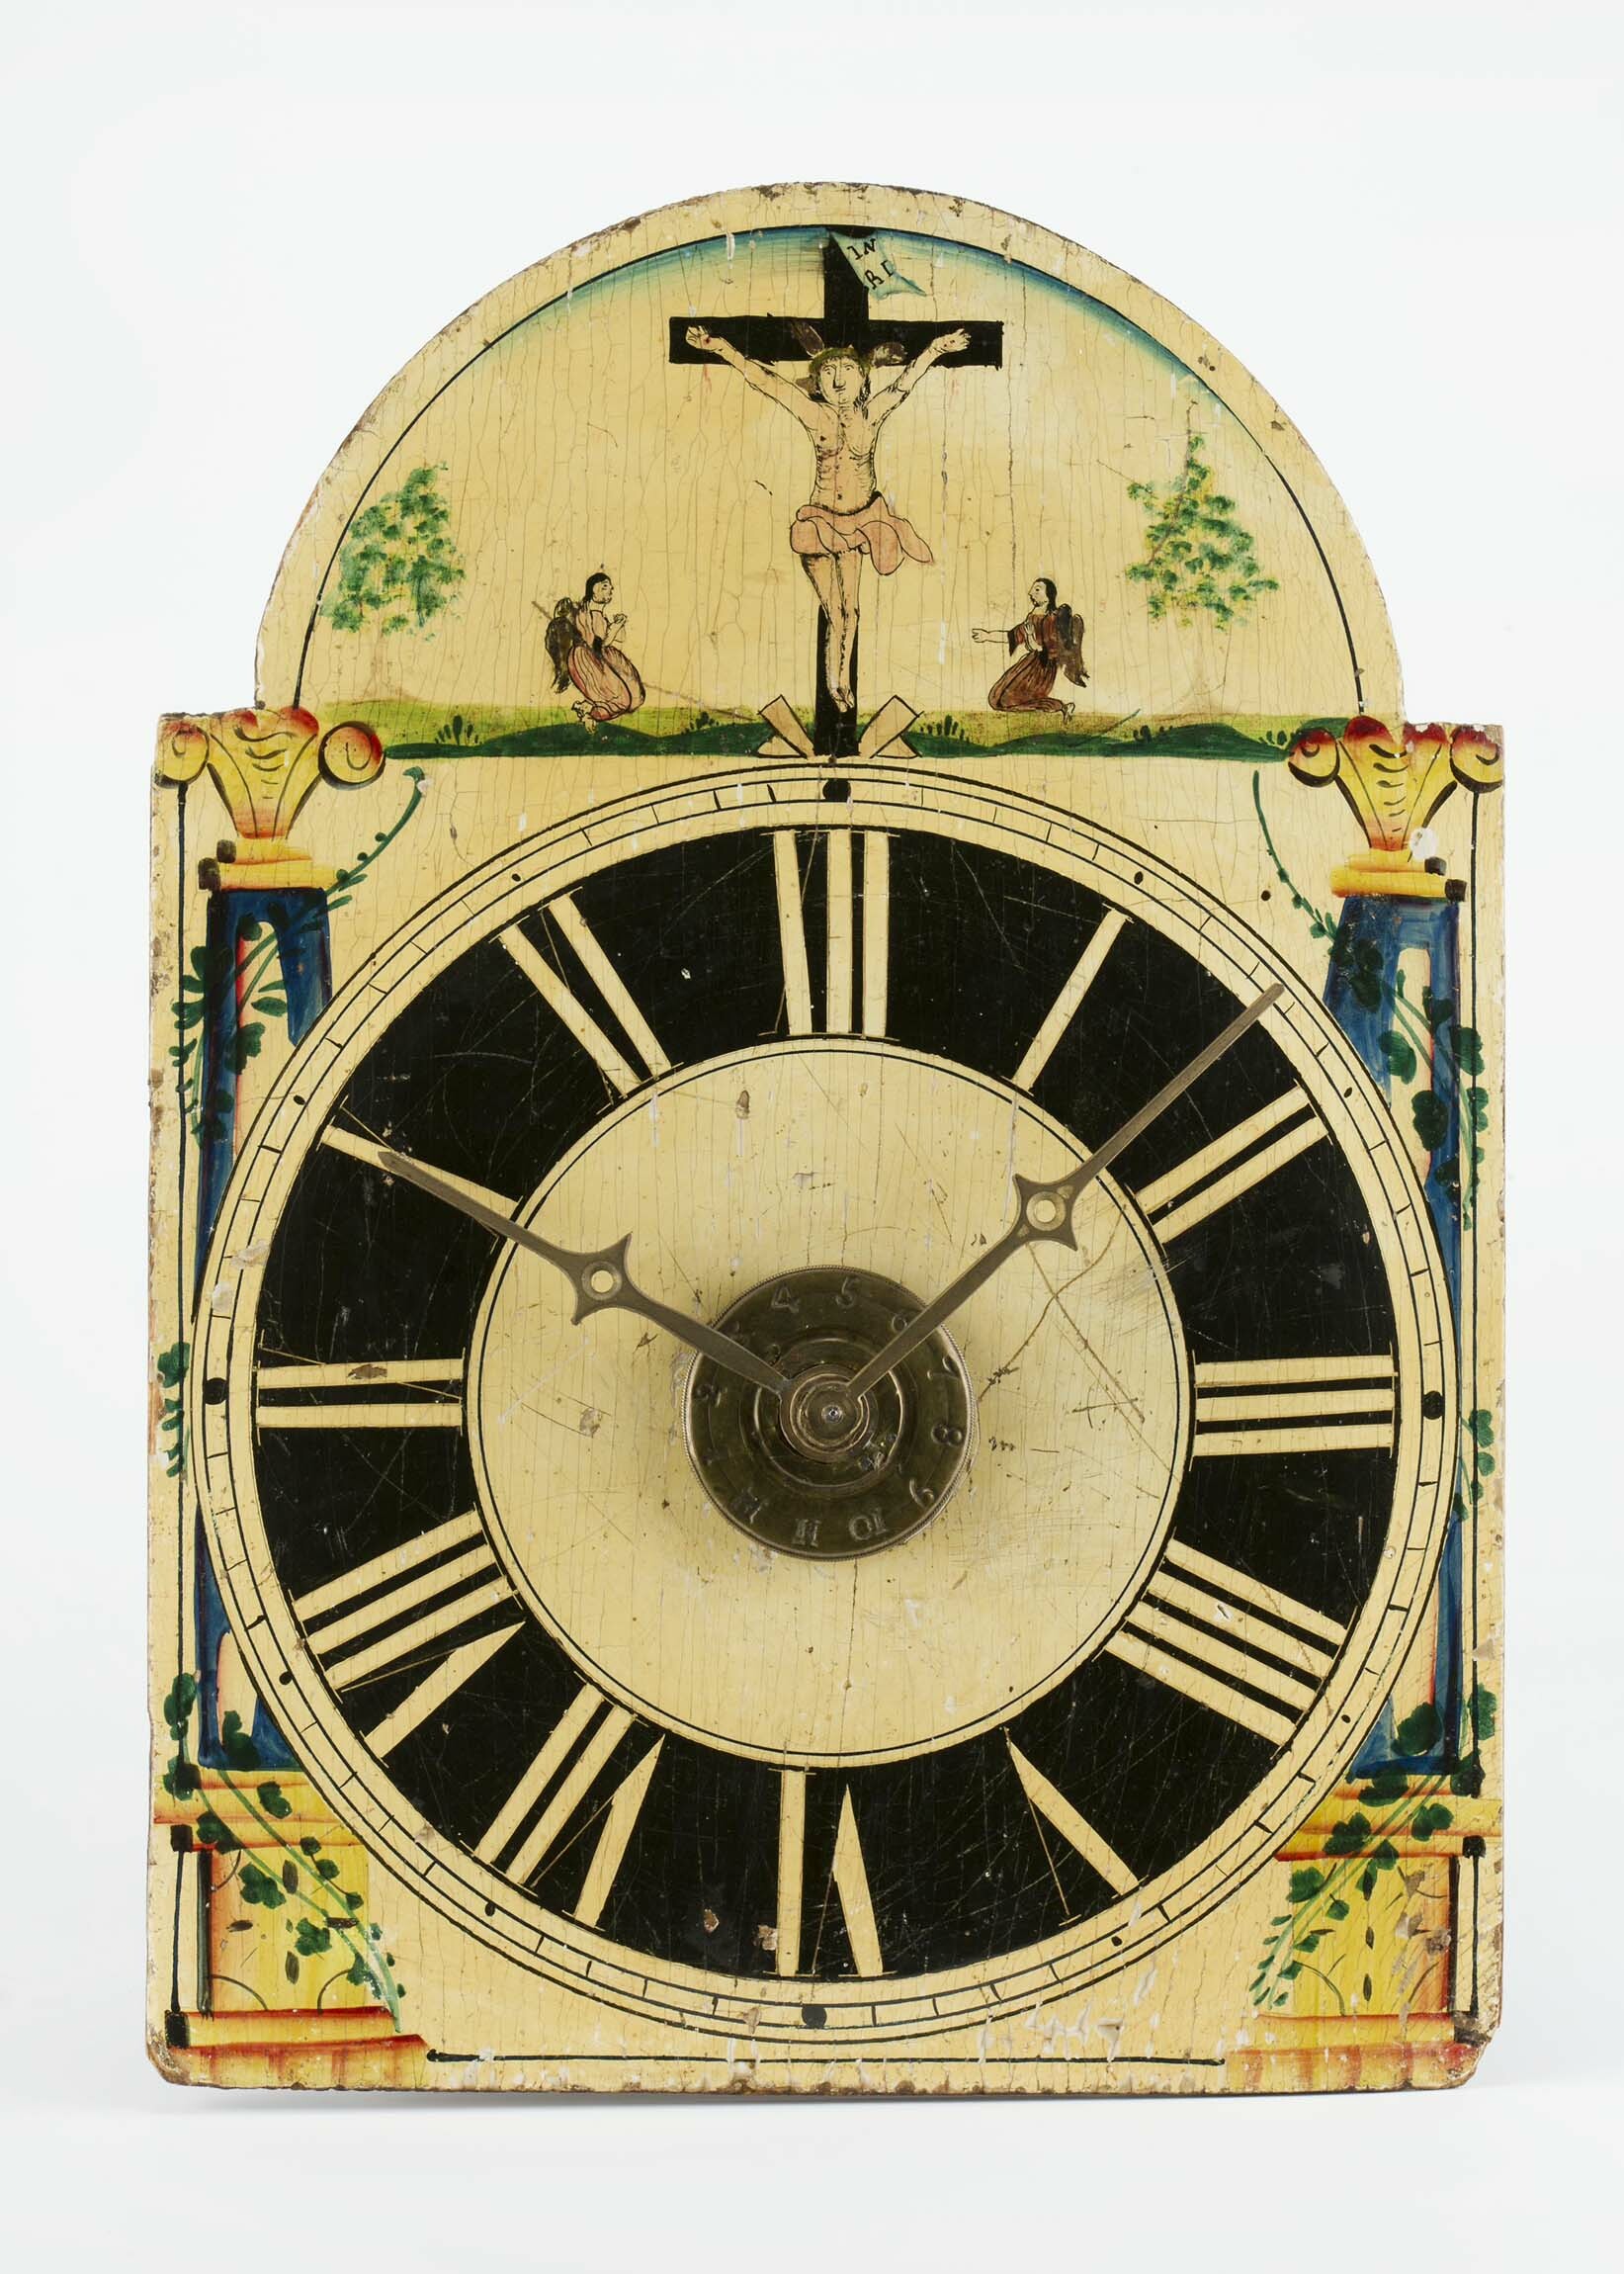 Lackschilduhr, Schwarzwald, um 1830 (Deutsches Uhrenmuseum CC BY-SA)